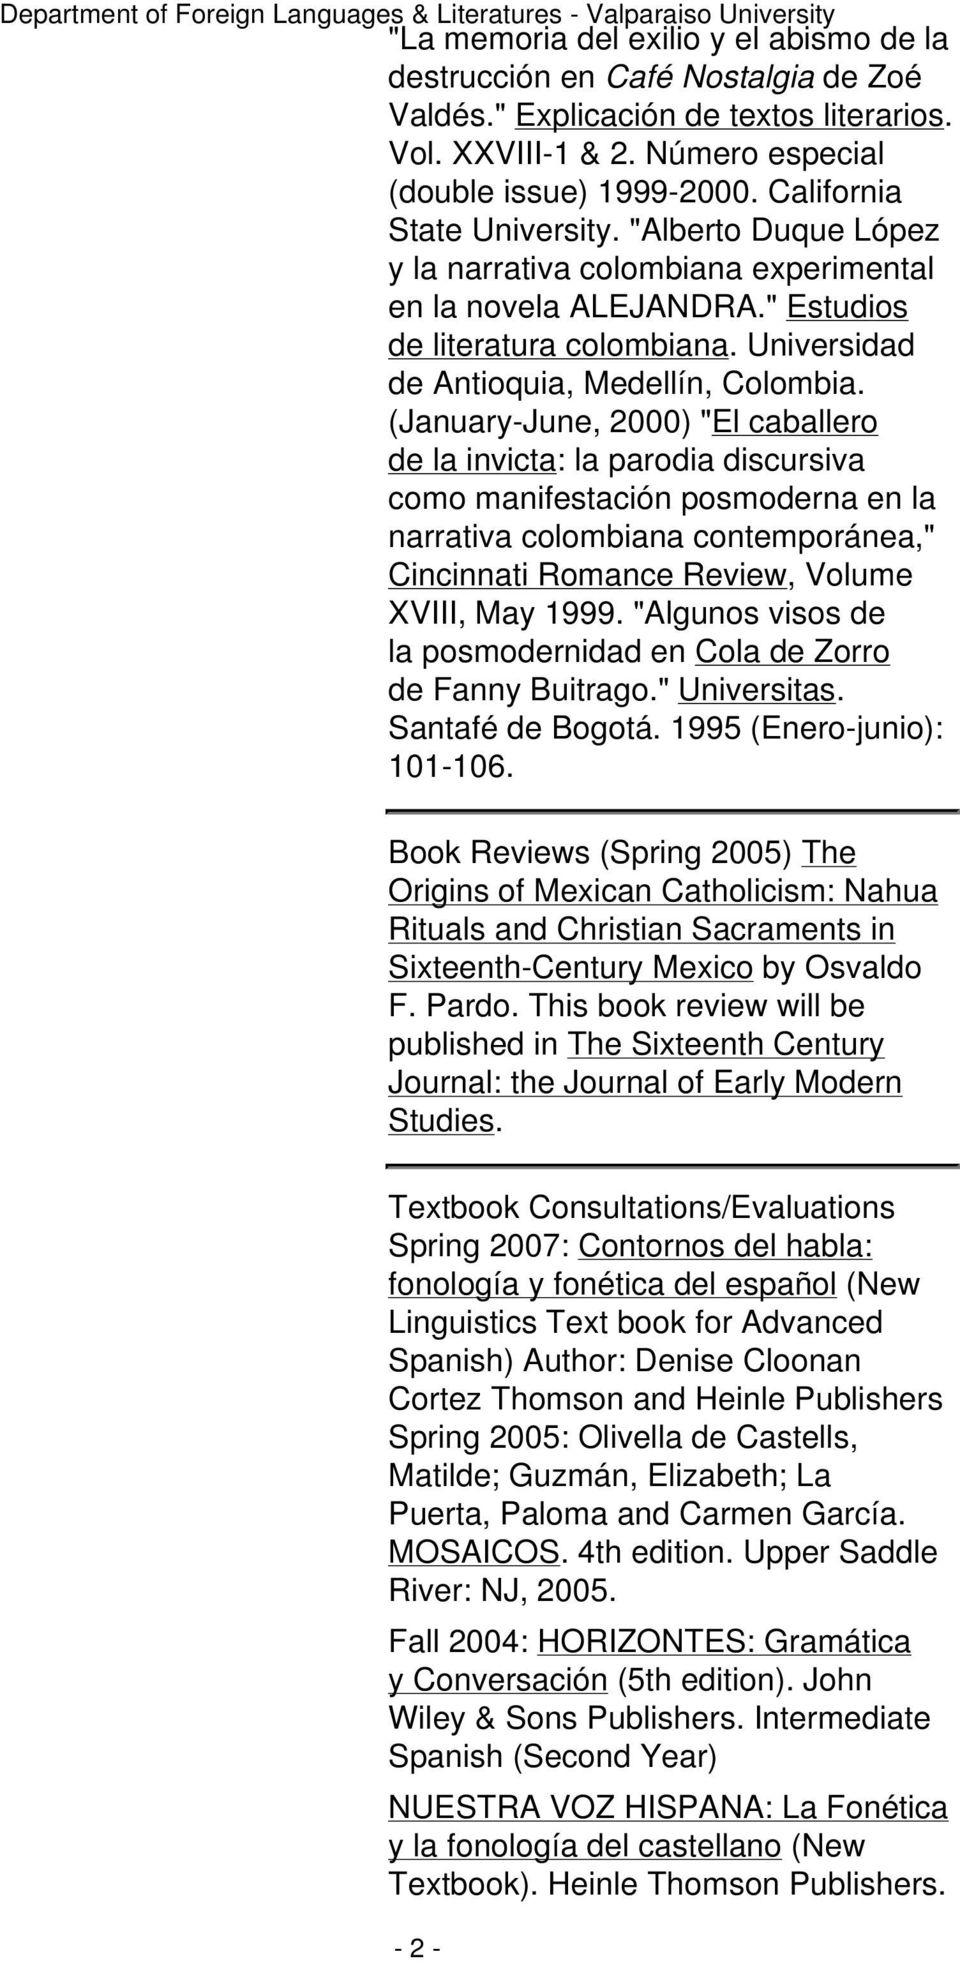 (January-June, 2000) "El caballero de la invicta: la parodia discursiva como manifestación posmoderna en la narrativa colombiana contemporánea," Cincinnati Romance Review, Volume XVIII, May 1999.